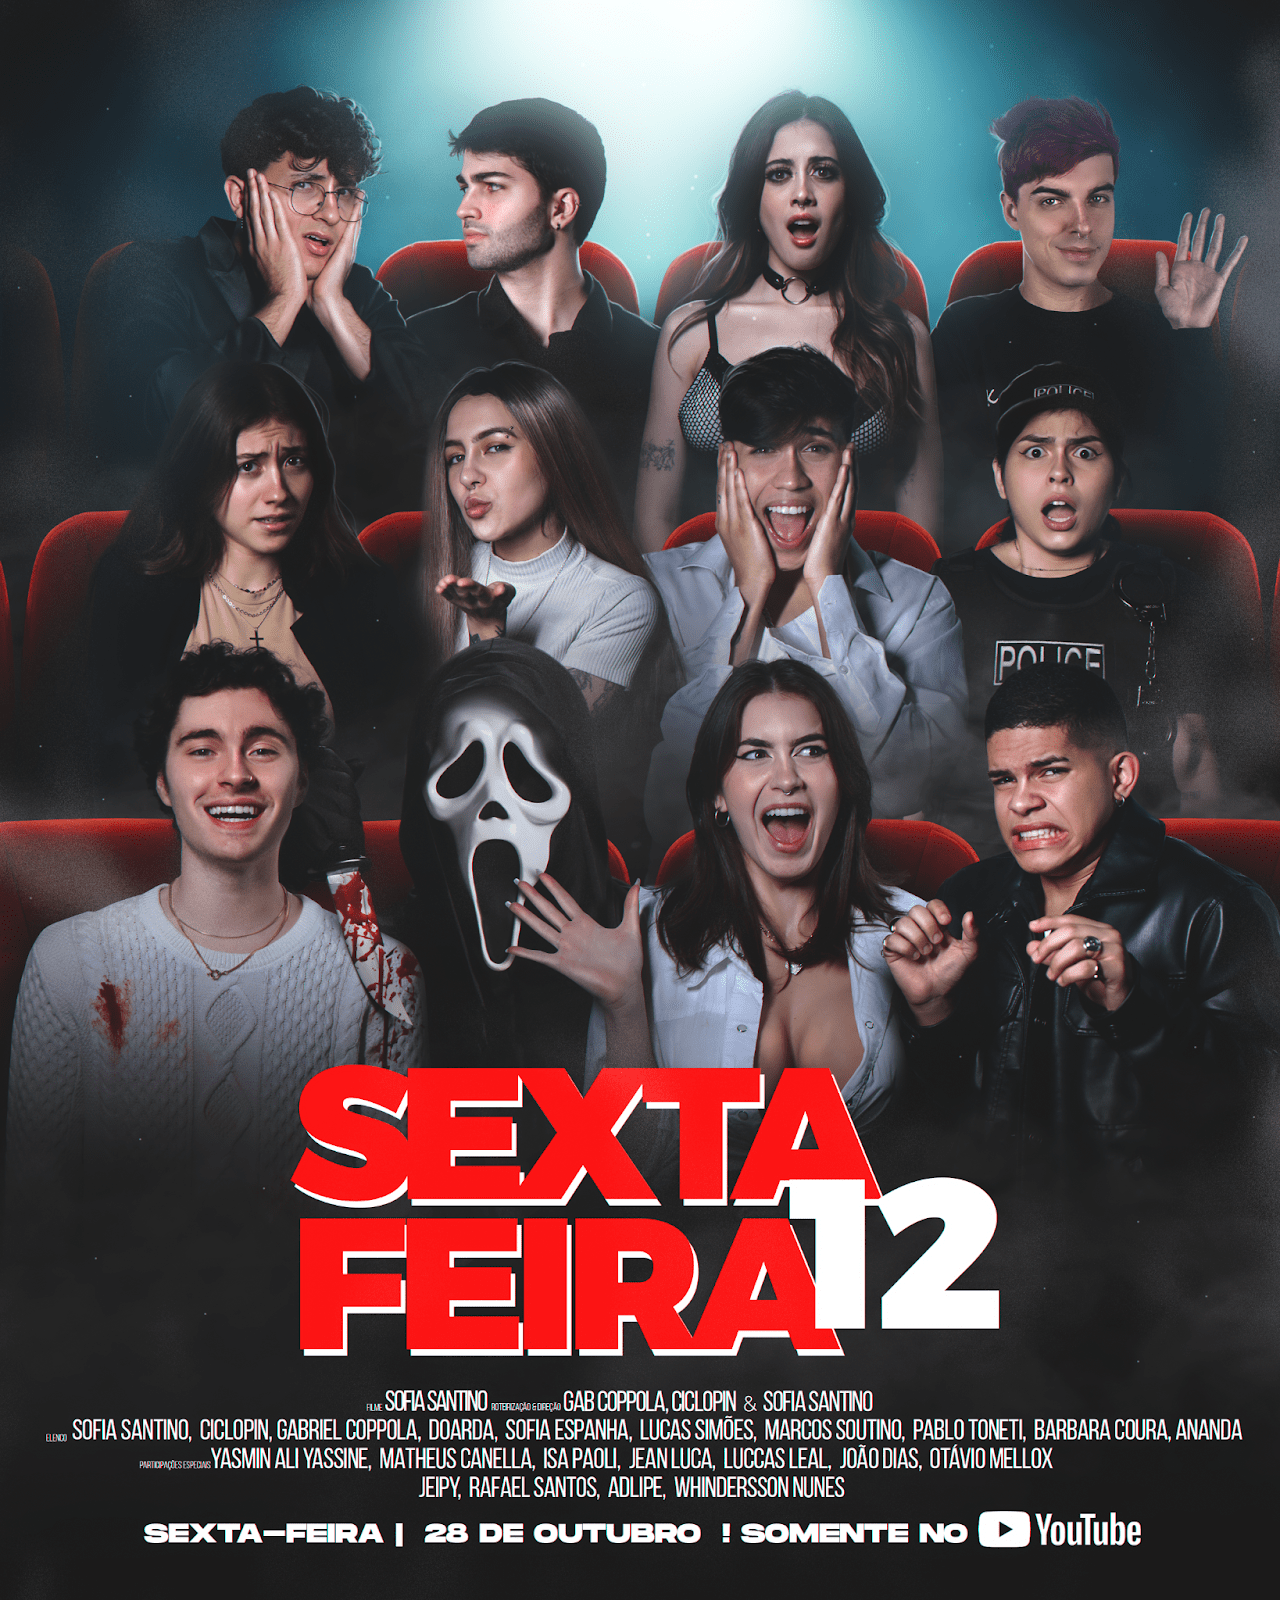 Sofia Santino lança o filme “Sexta-Feira 12”, inspirado no clássico “Todo Mundo Em Pânico”